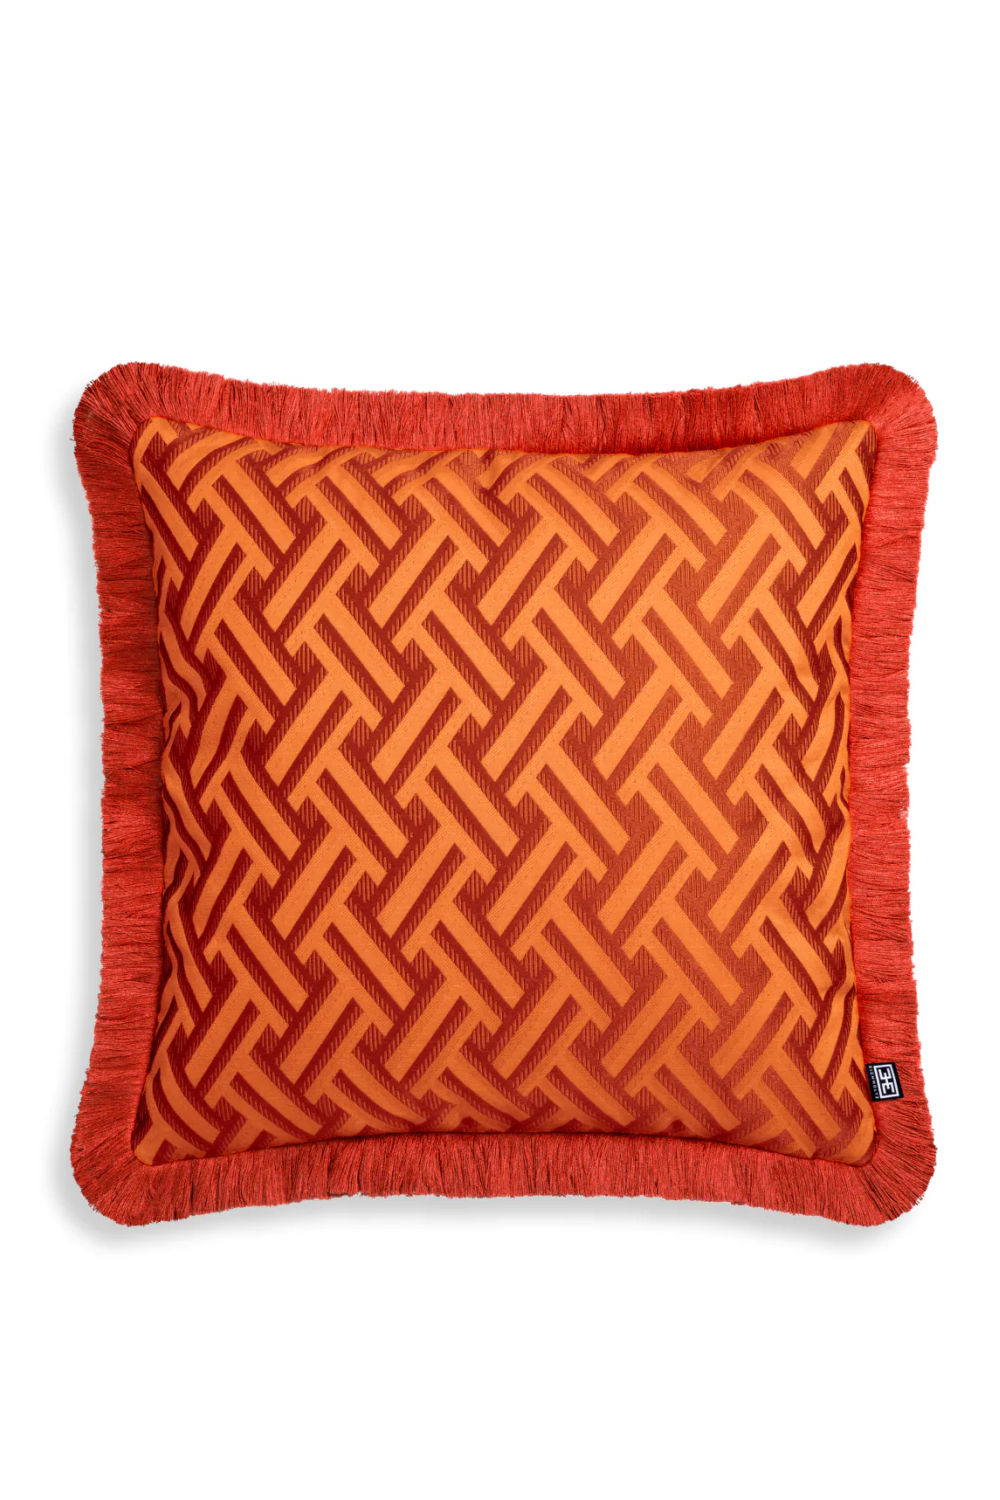 Orange Fringed Cushion | Eichholtz Doris | Oroa.com